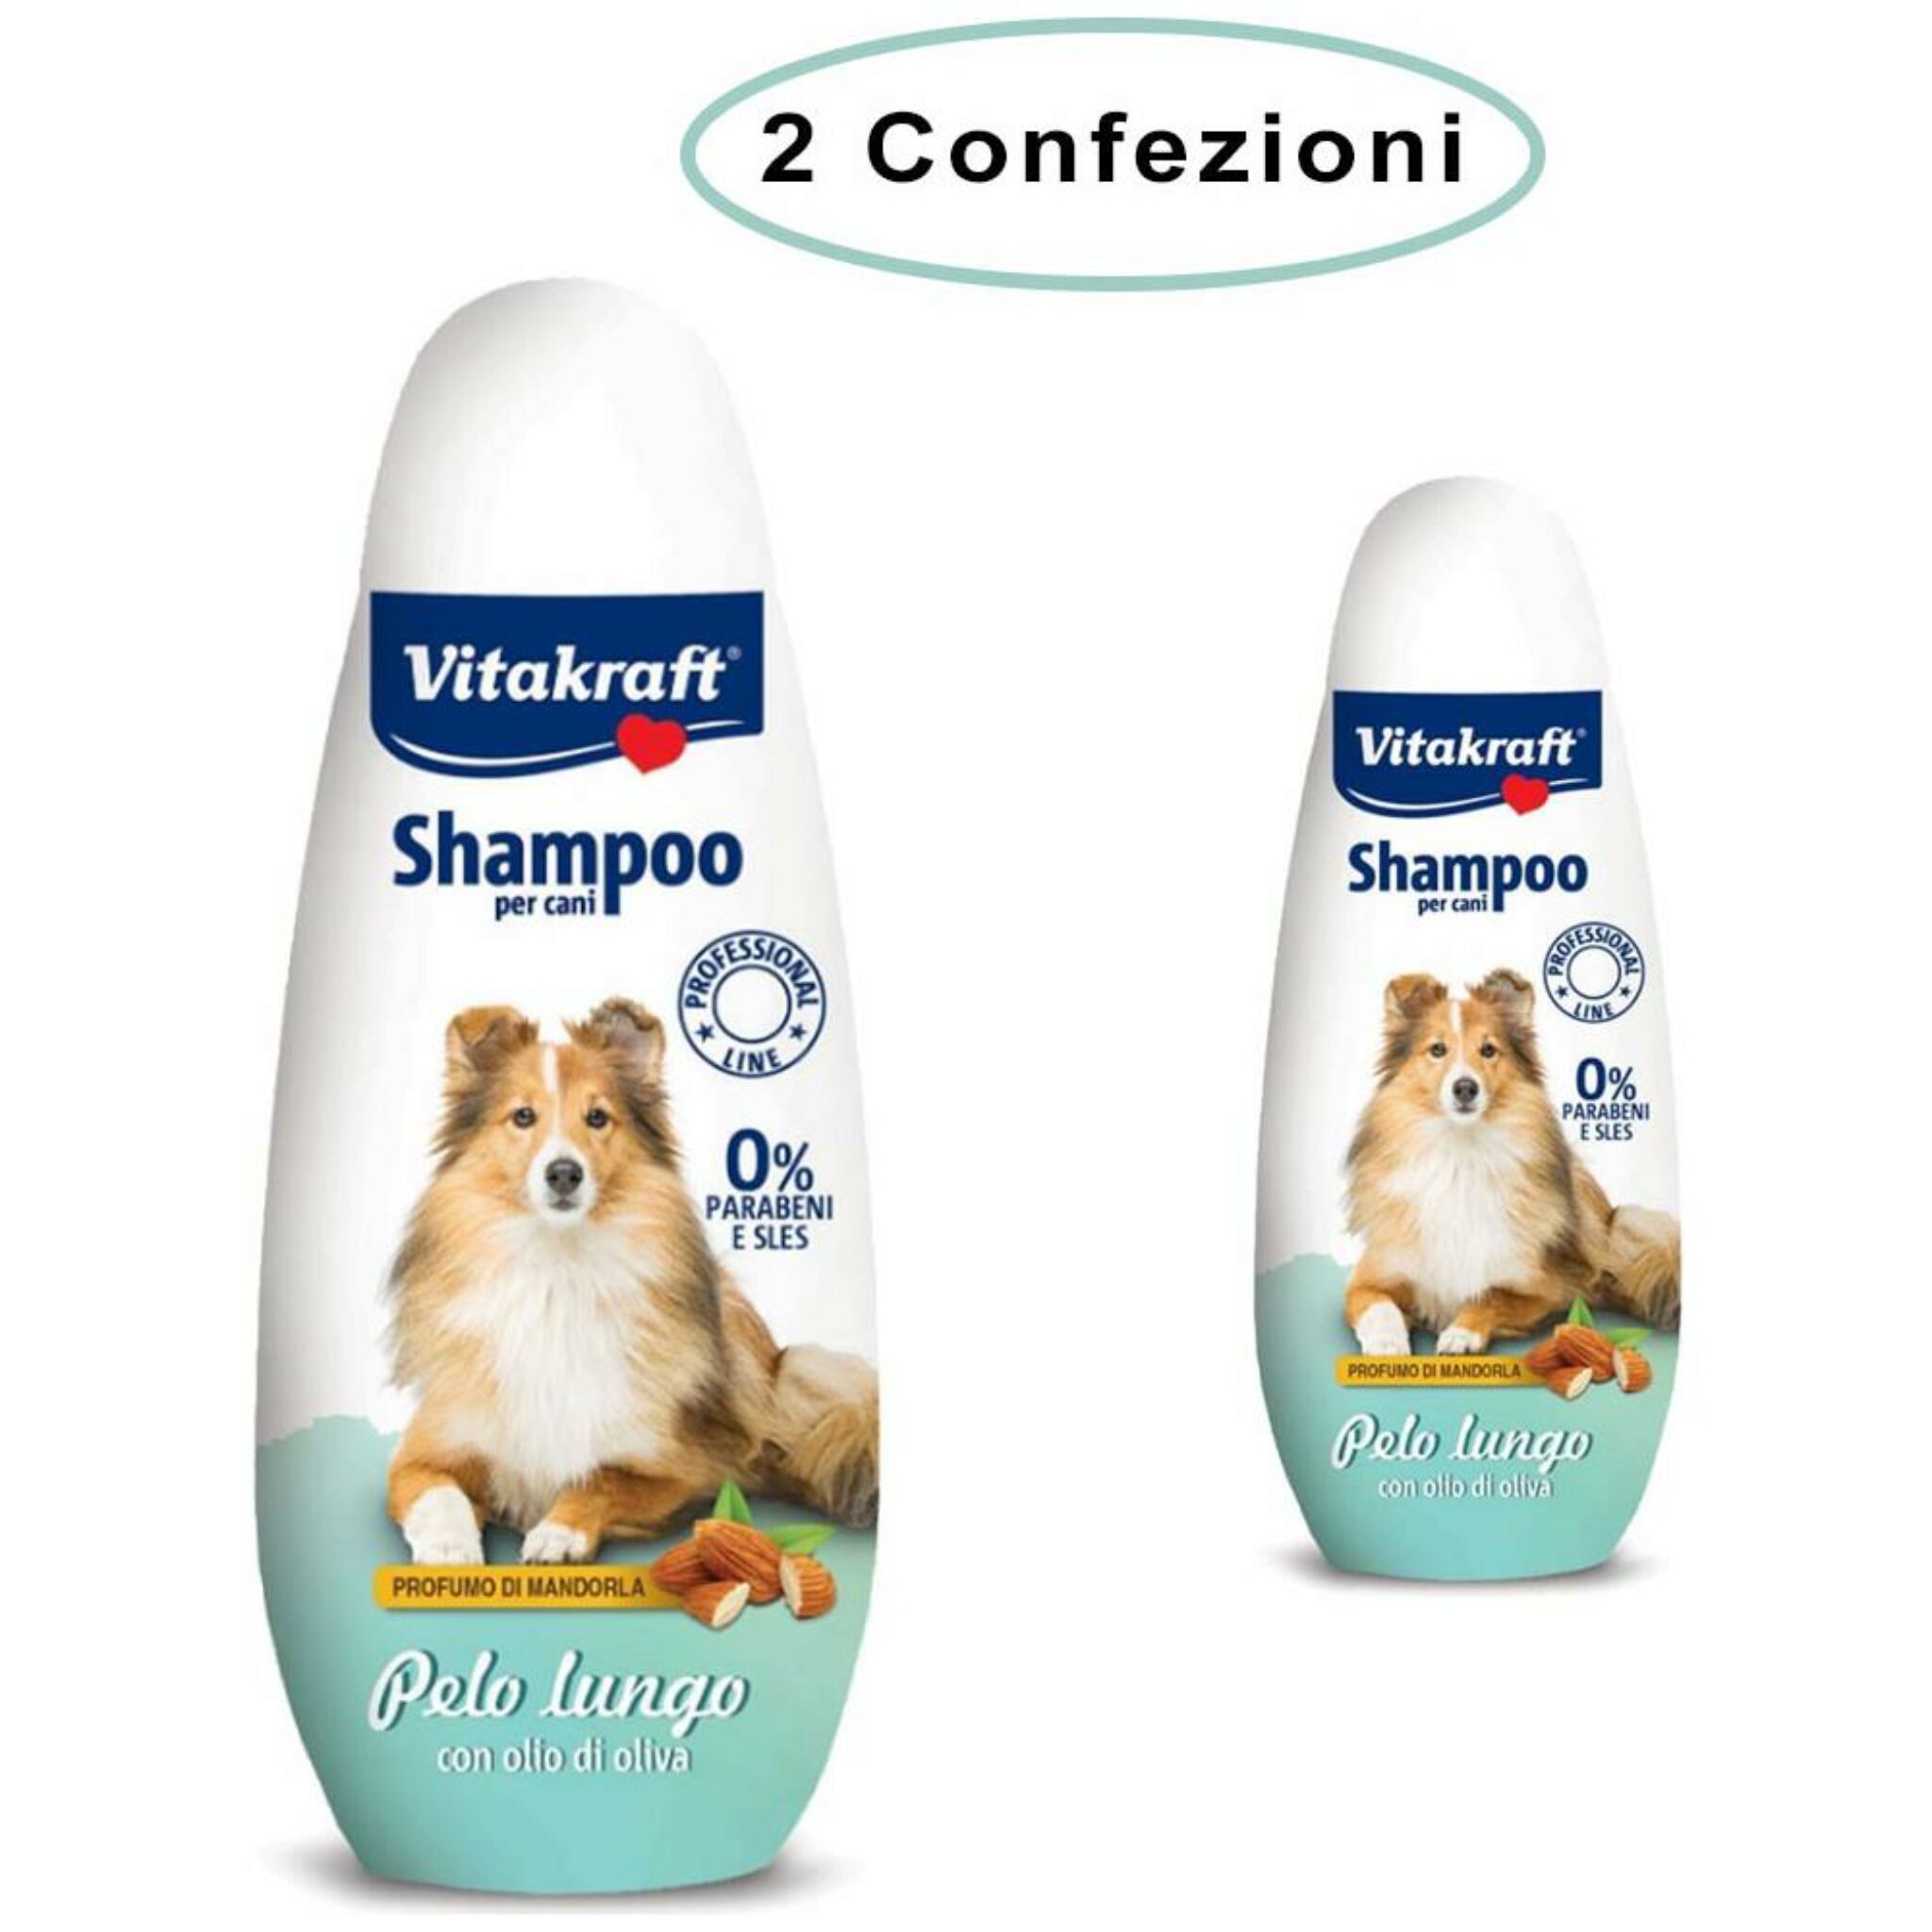 Shampoo Barboncino. Le Nostre 5 Migliori Scelte Per Il Tuo Miglior Shampoo Per Cani Per Barboncini